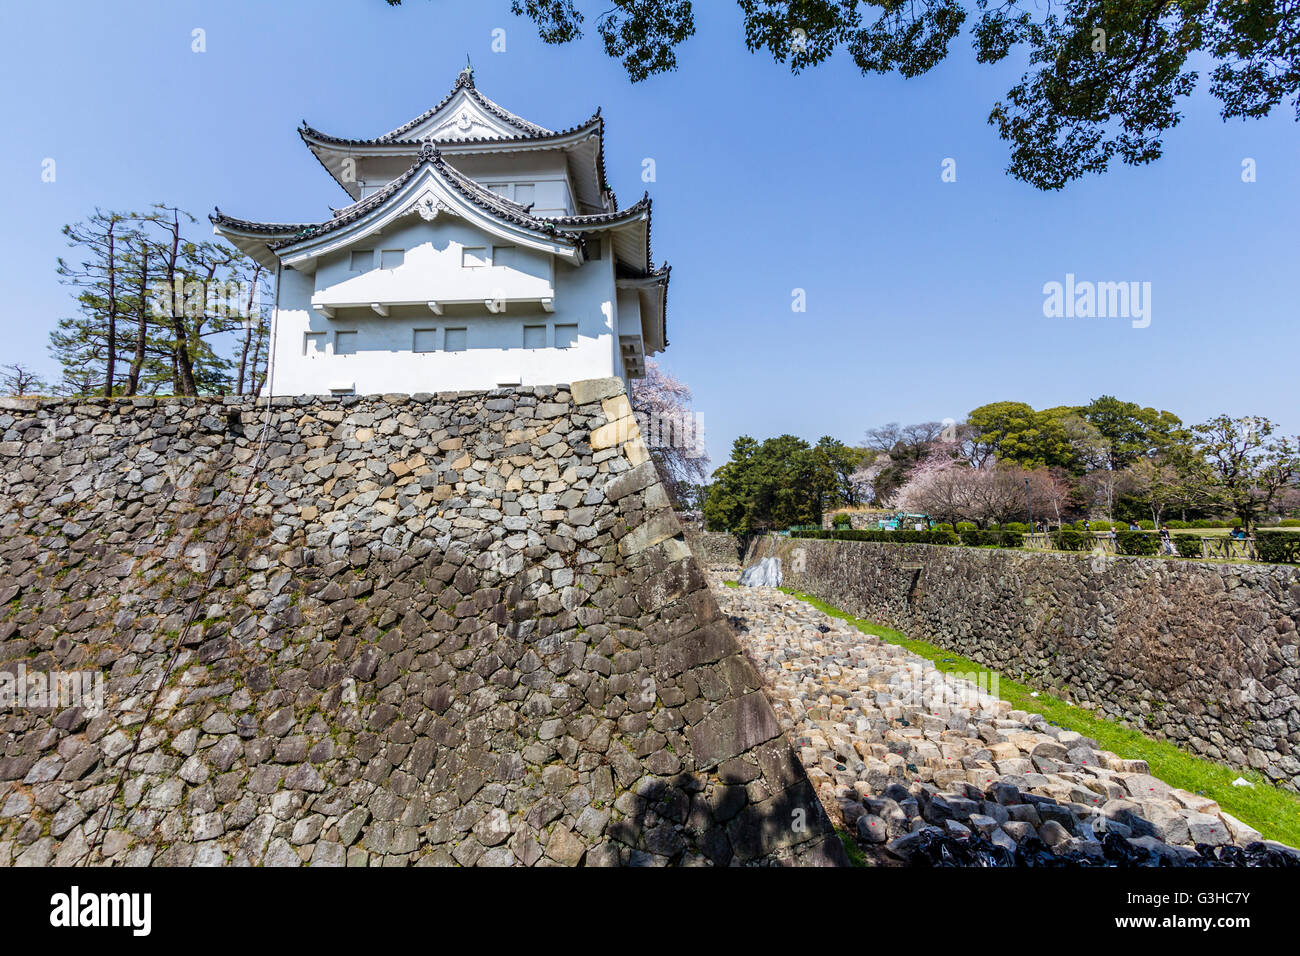 L'angolo sud est torretta, Tatsumi yagura, sulla parte superiore del muro di pietra base con fossato asciutto. Il Castello Nagoya, Giappone. La primavera con cielo blu. Foto Stock